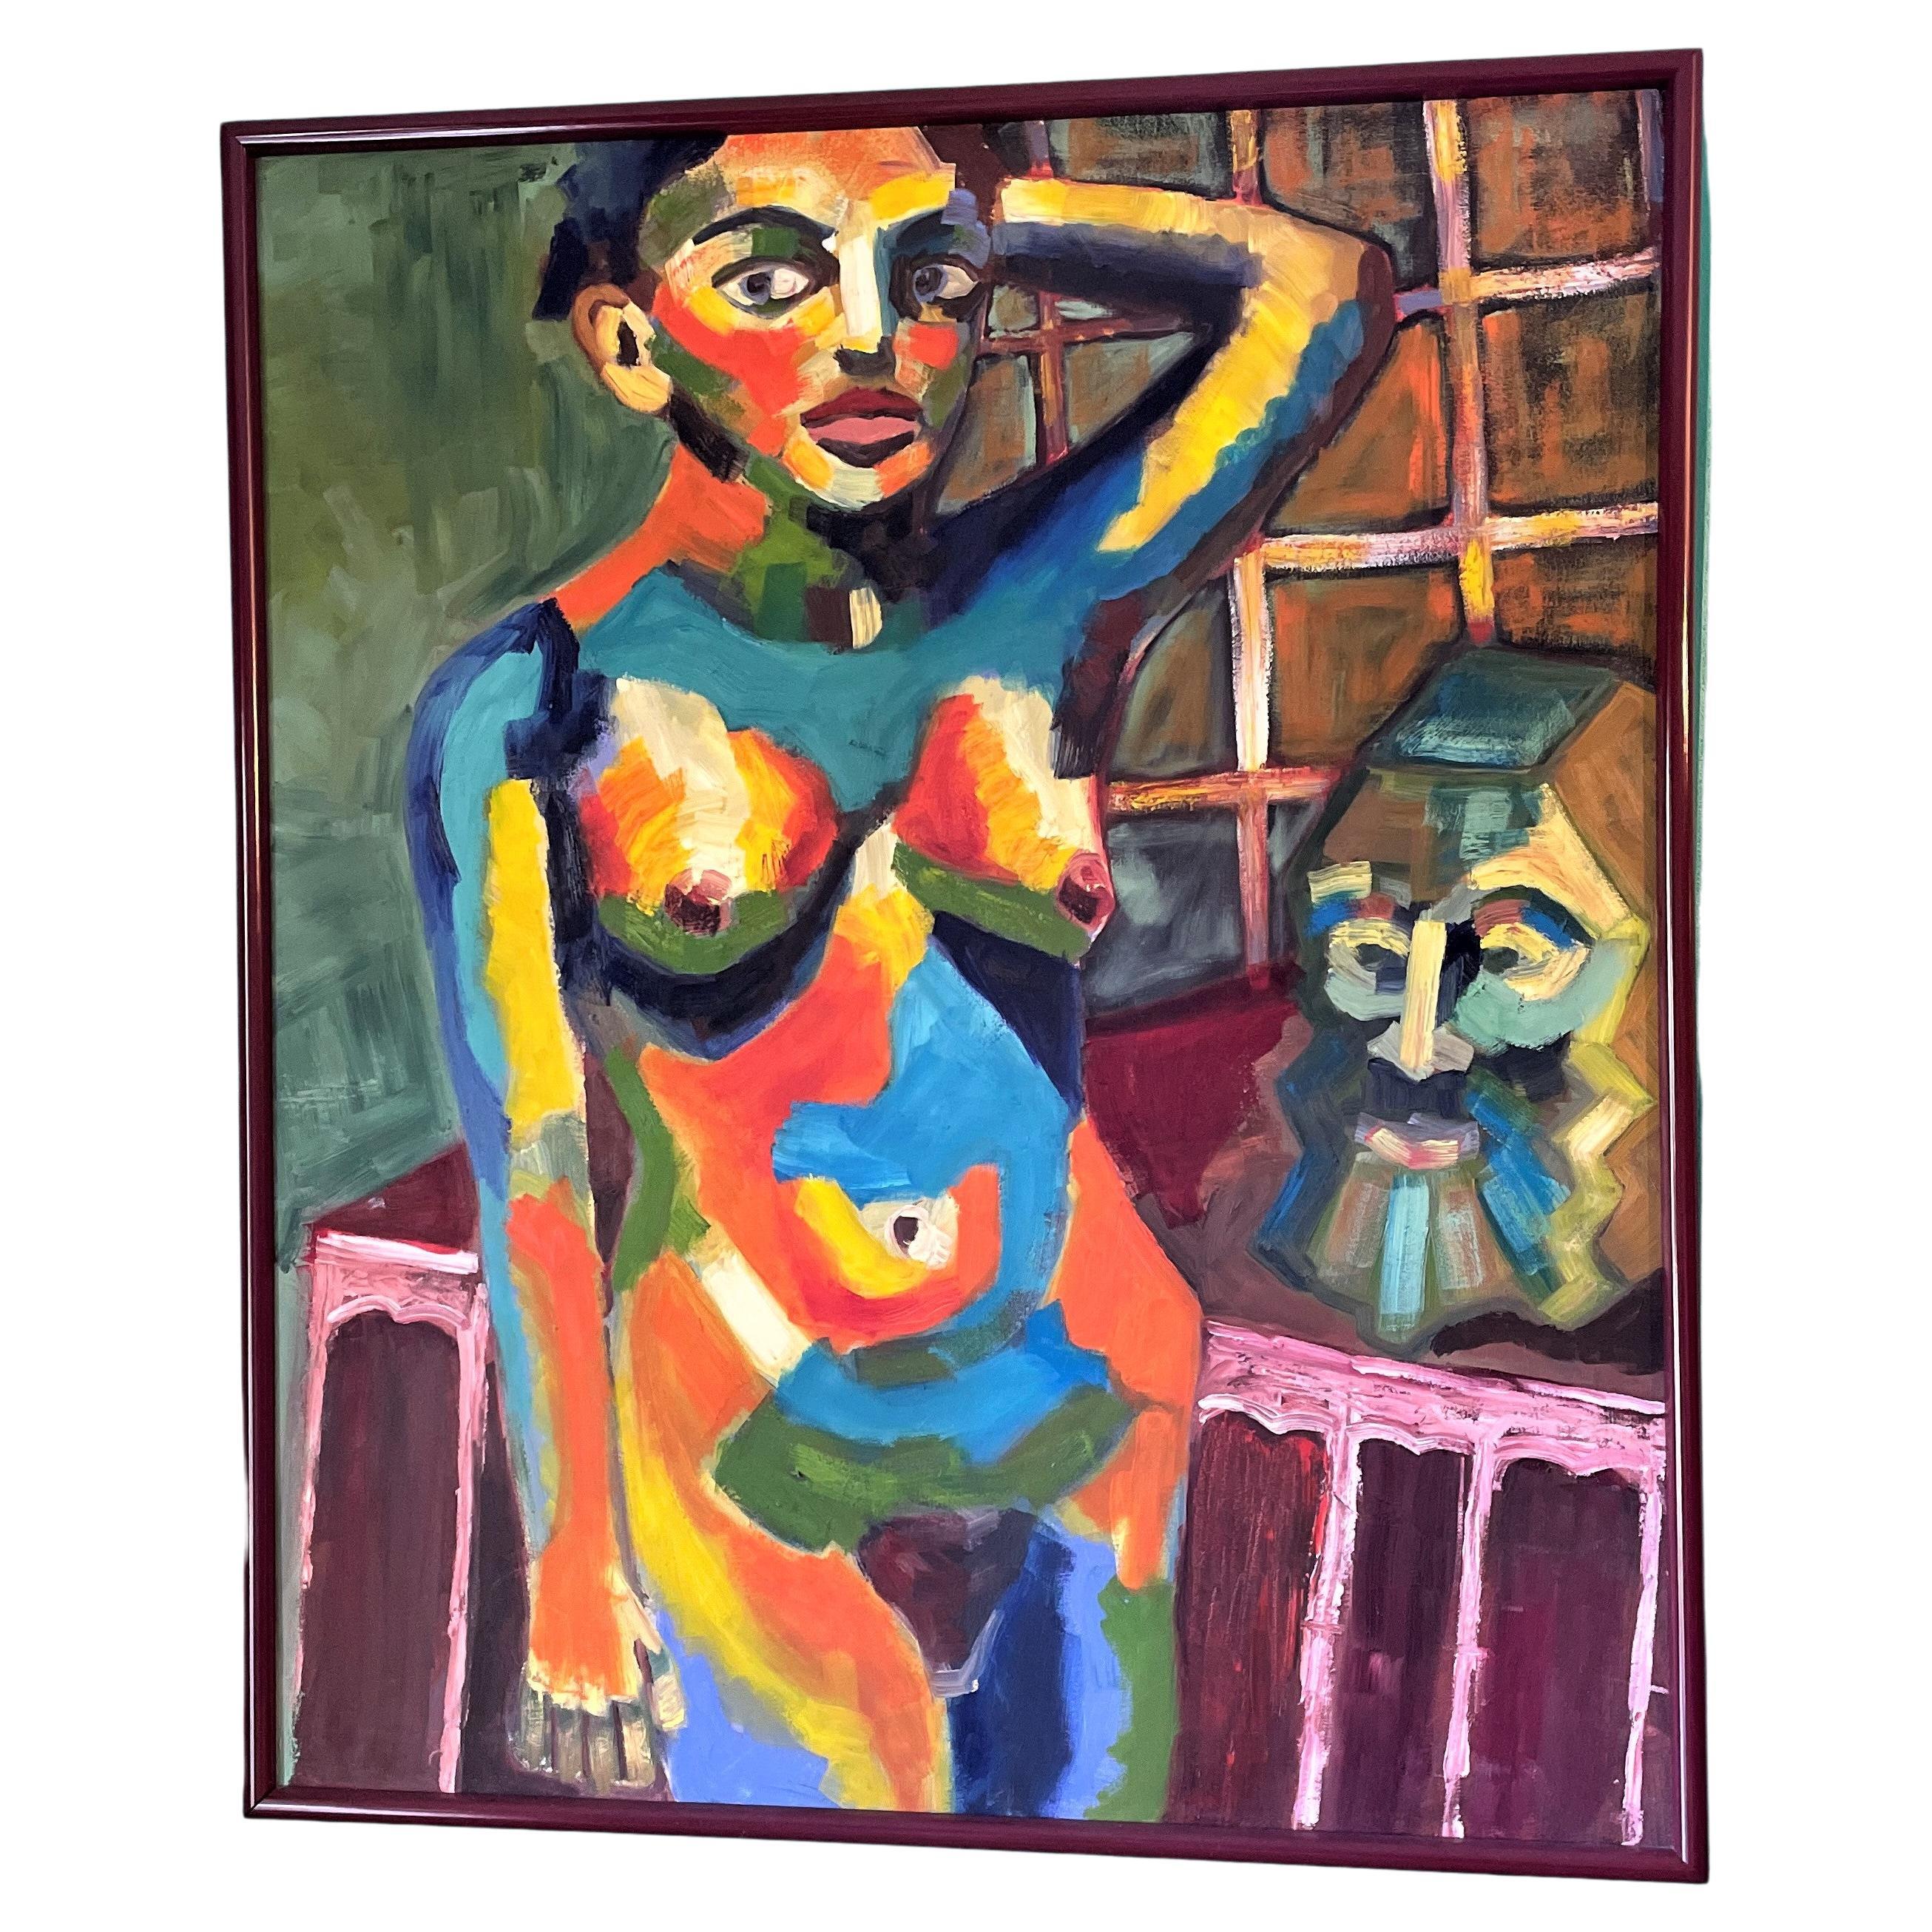 Porträt einer Frau, Ölgemälde in einer fauvistischen Palette, gerahmt